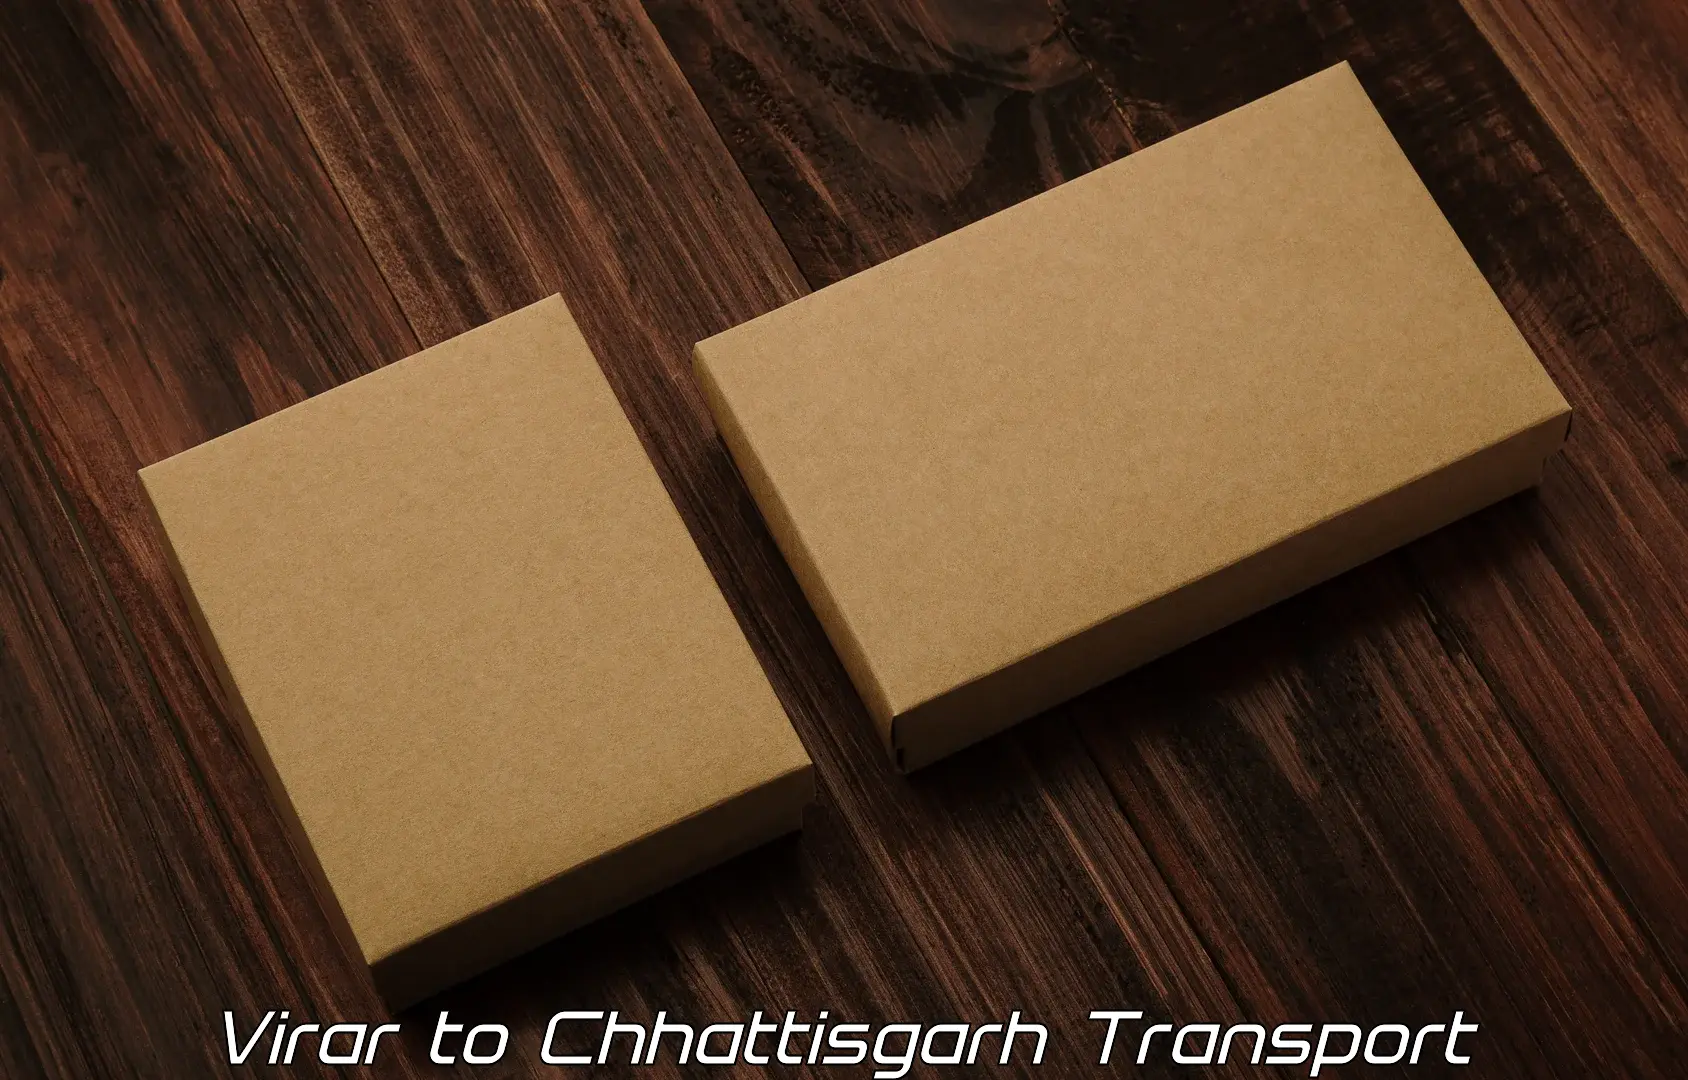 Transport in sharing in Virar to Korea Chhattisgarh